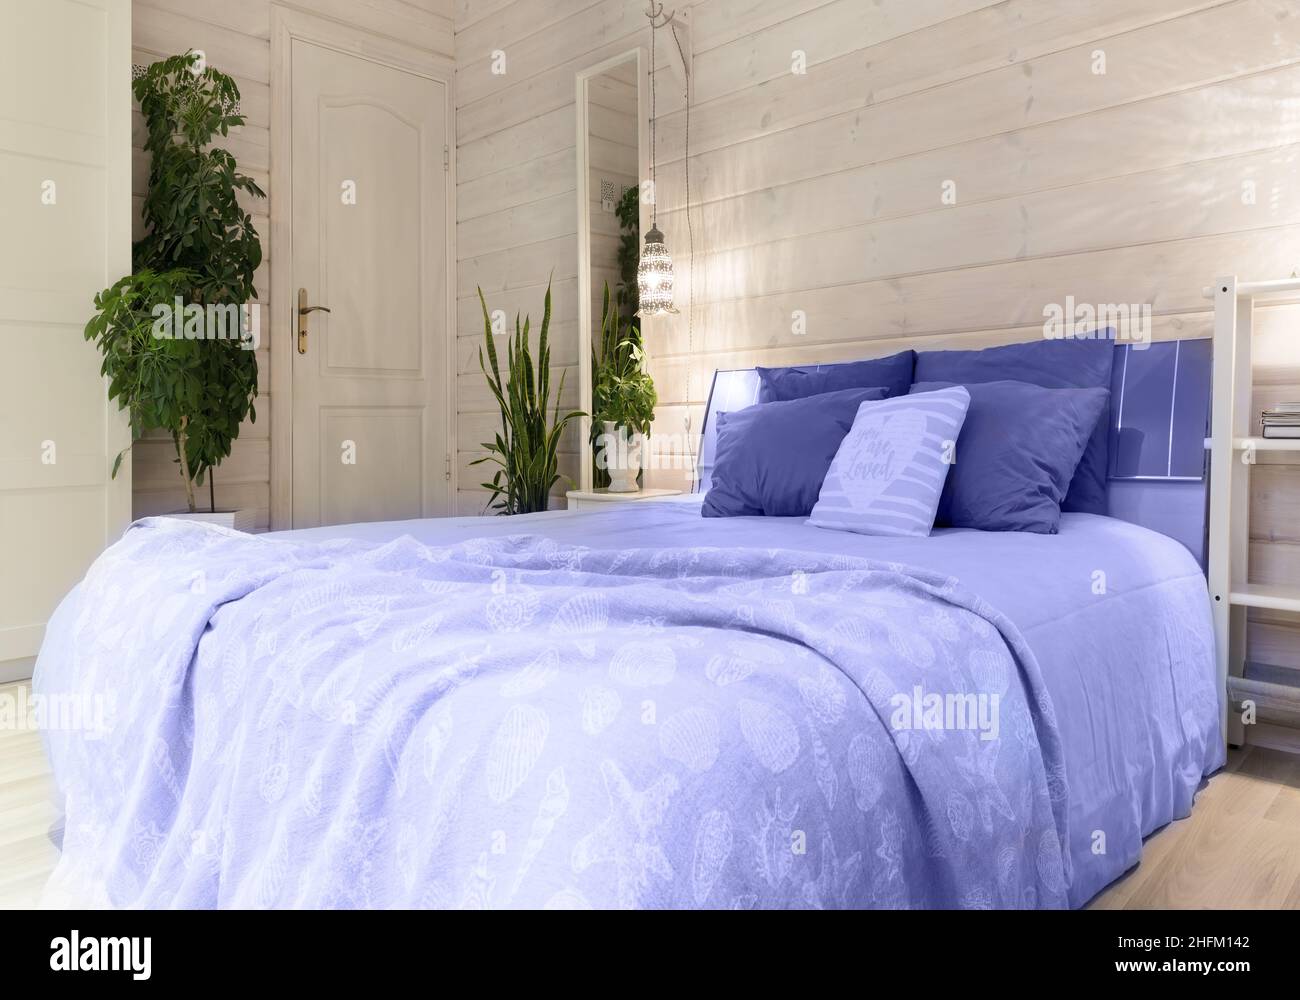 schlafzimmer im skandinavischen stil in trendigen farben des